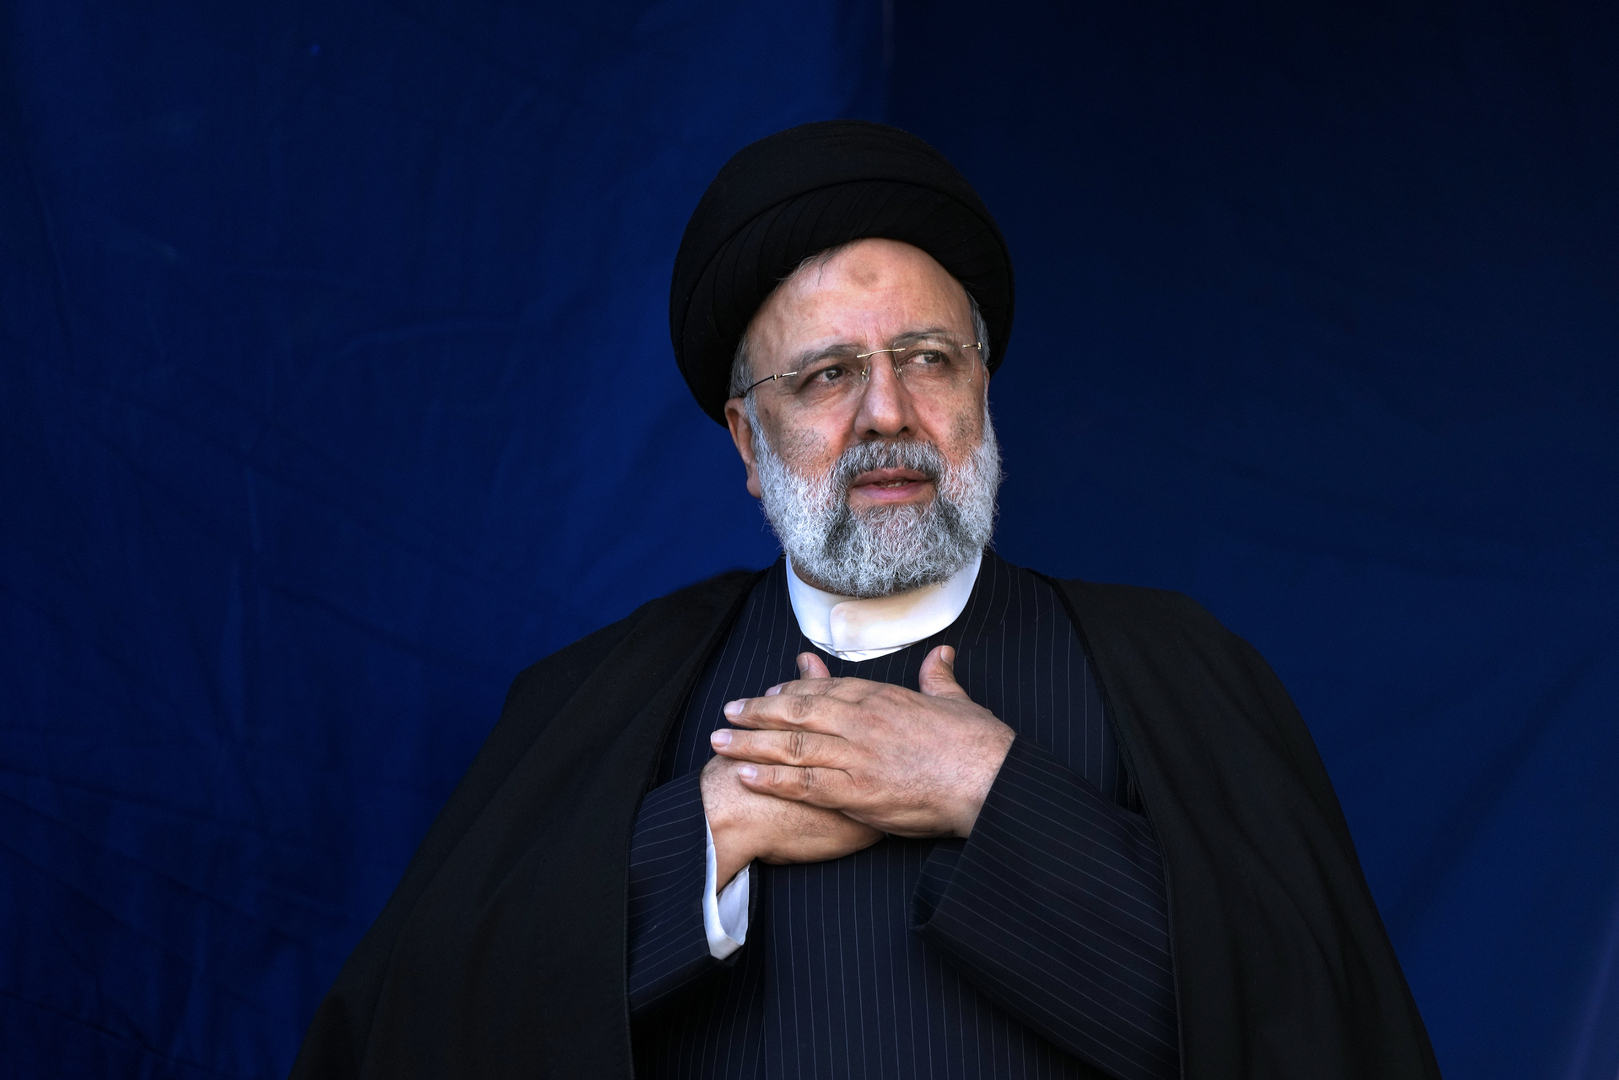 وفاة مواطن إيراني إثر سماعه نبأ تحطم مروحية رئيسي ورفاقه